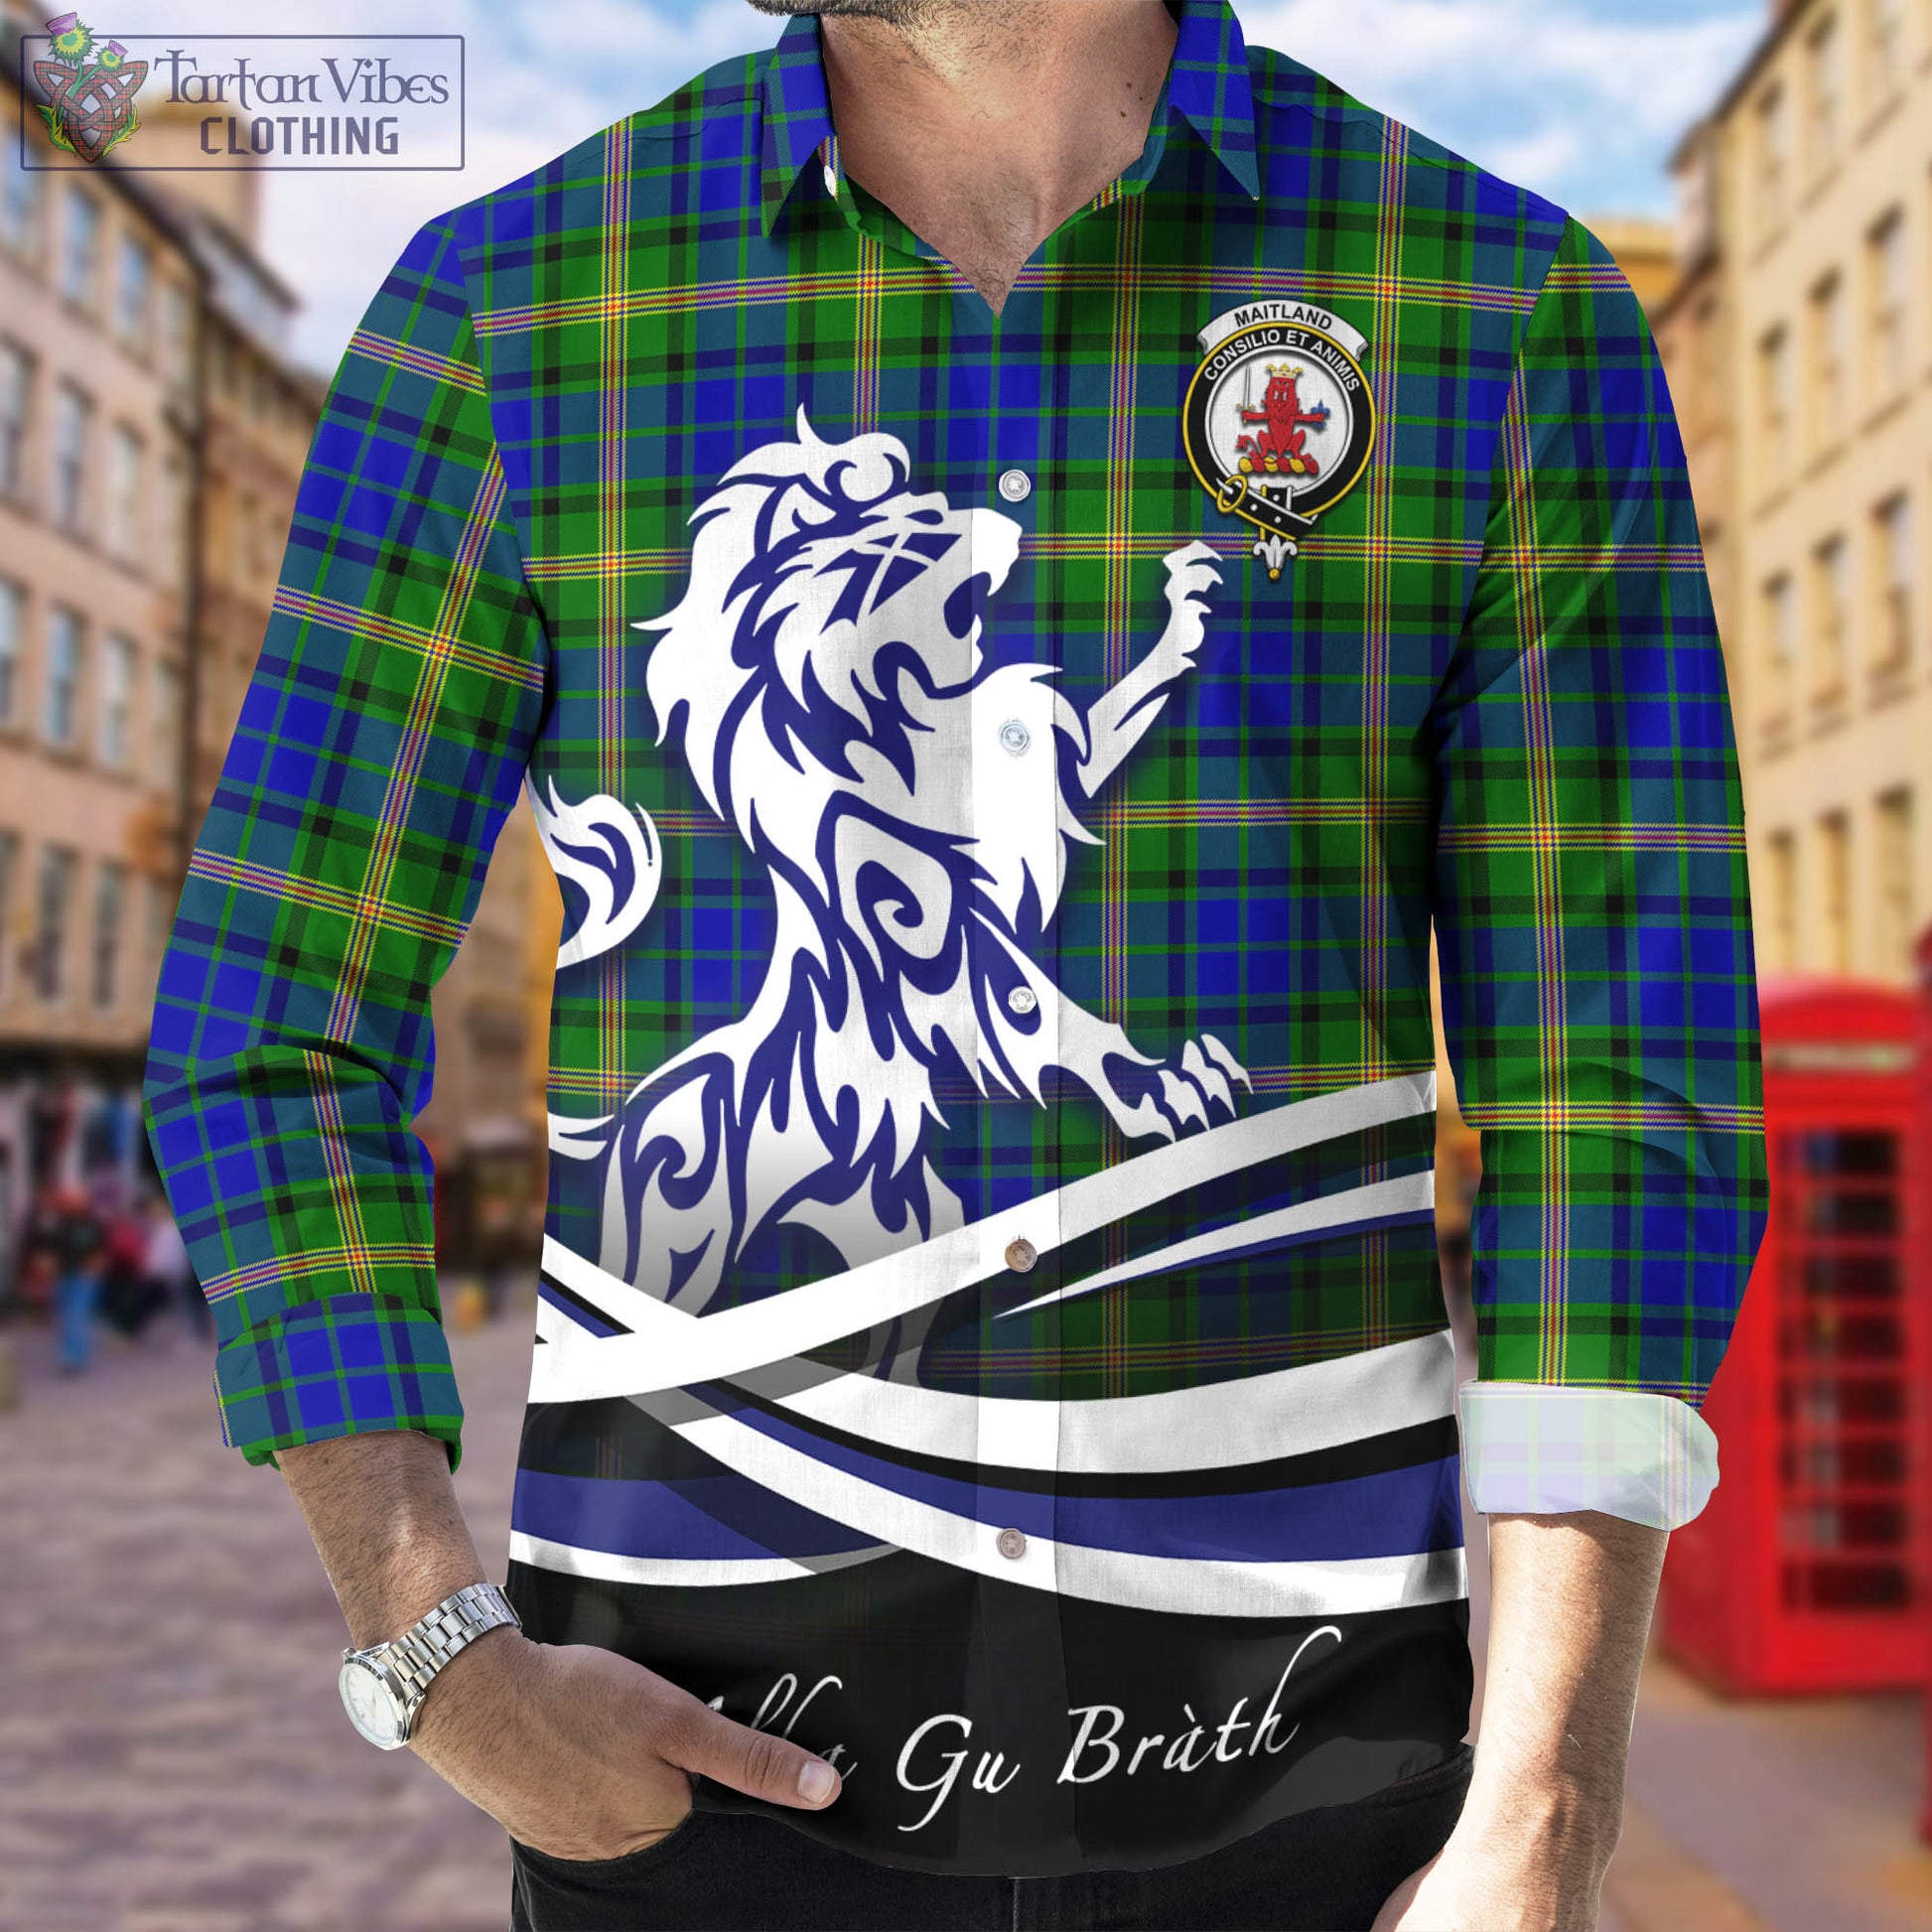 maitland-tartan-long-sleeve-button-up-shirt-with-alba-gu-brath-regal-lion-emblem